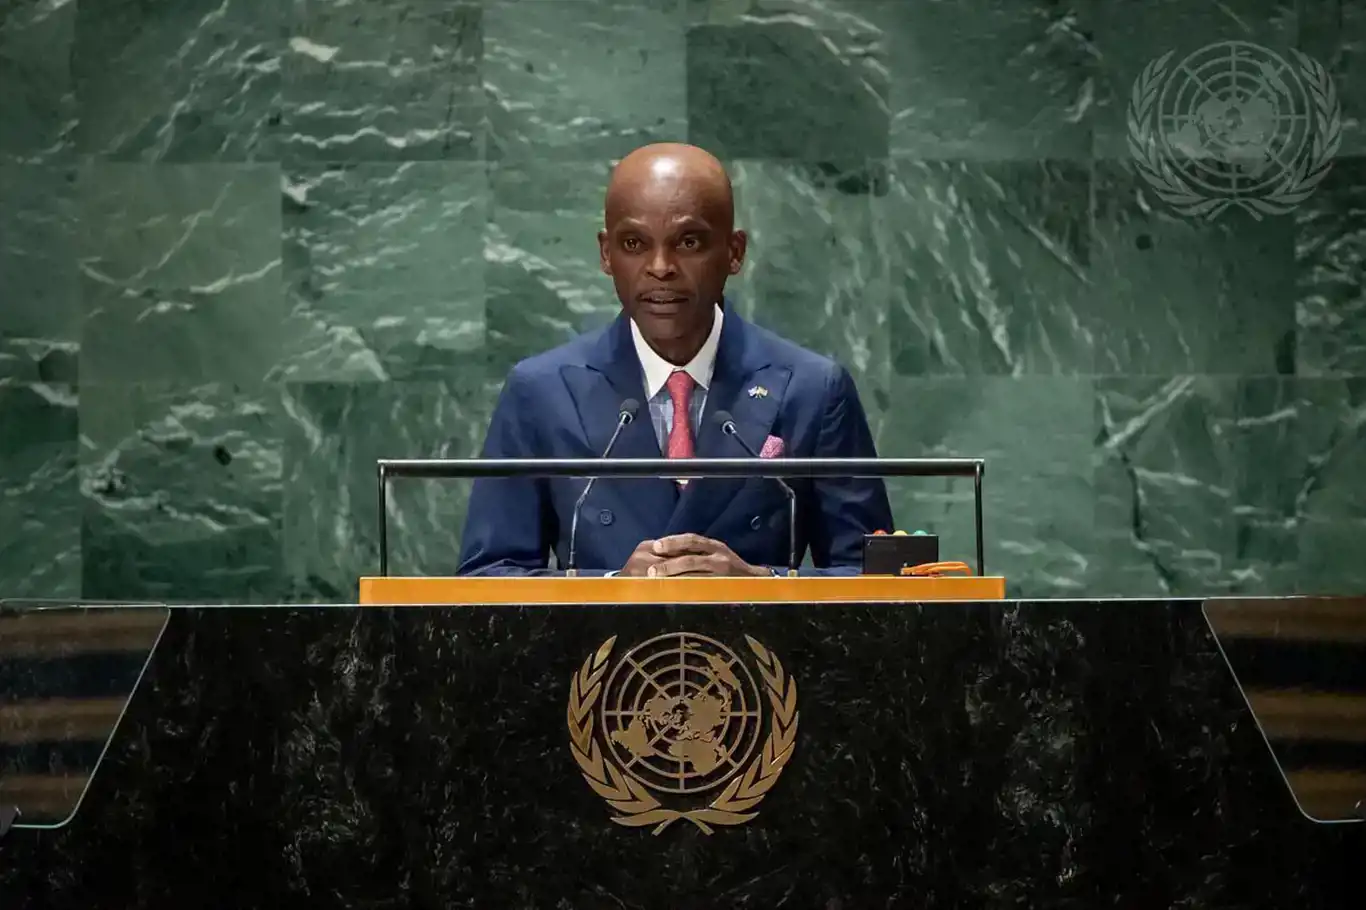 وزير خارجية توغو يصرخ في وجه الأوروبيين في اجتماع الأمم المتحدة: سئمنا استخفافكم بآراء شعبنا واستهتاركم به